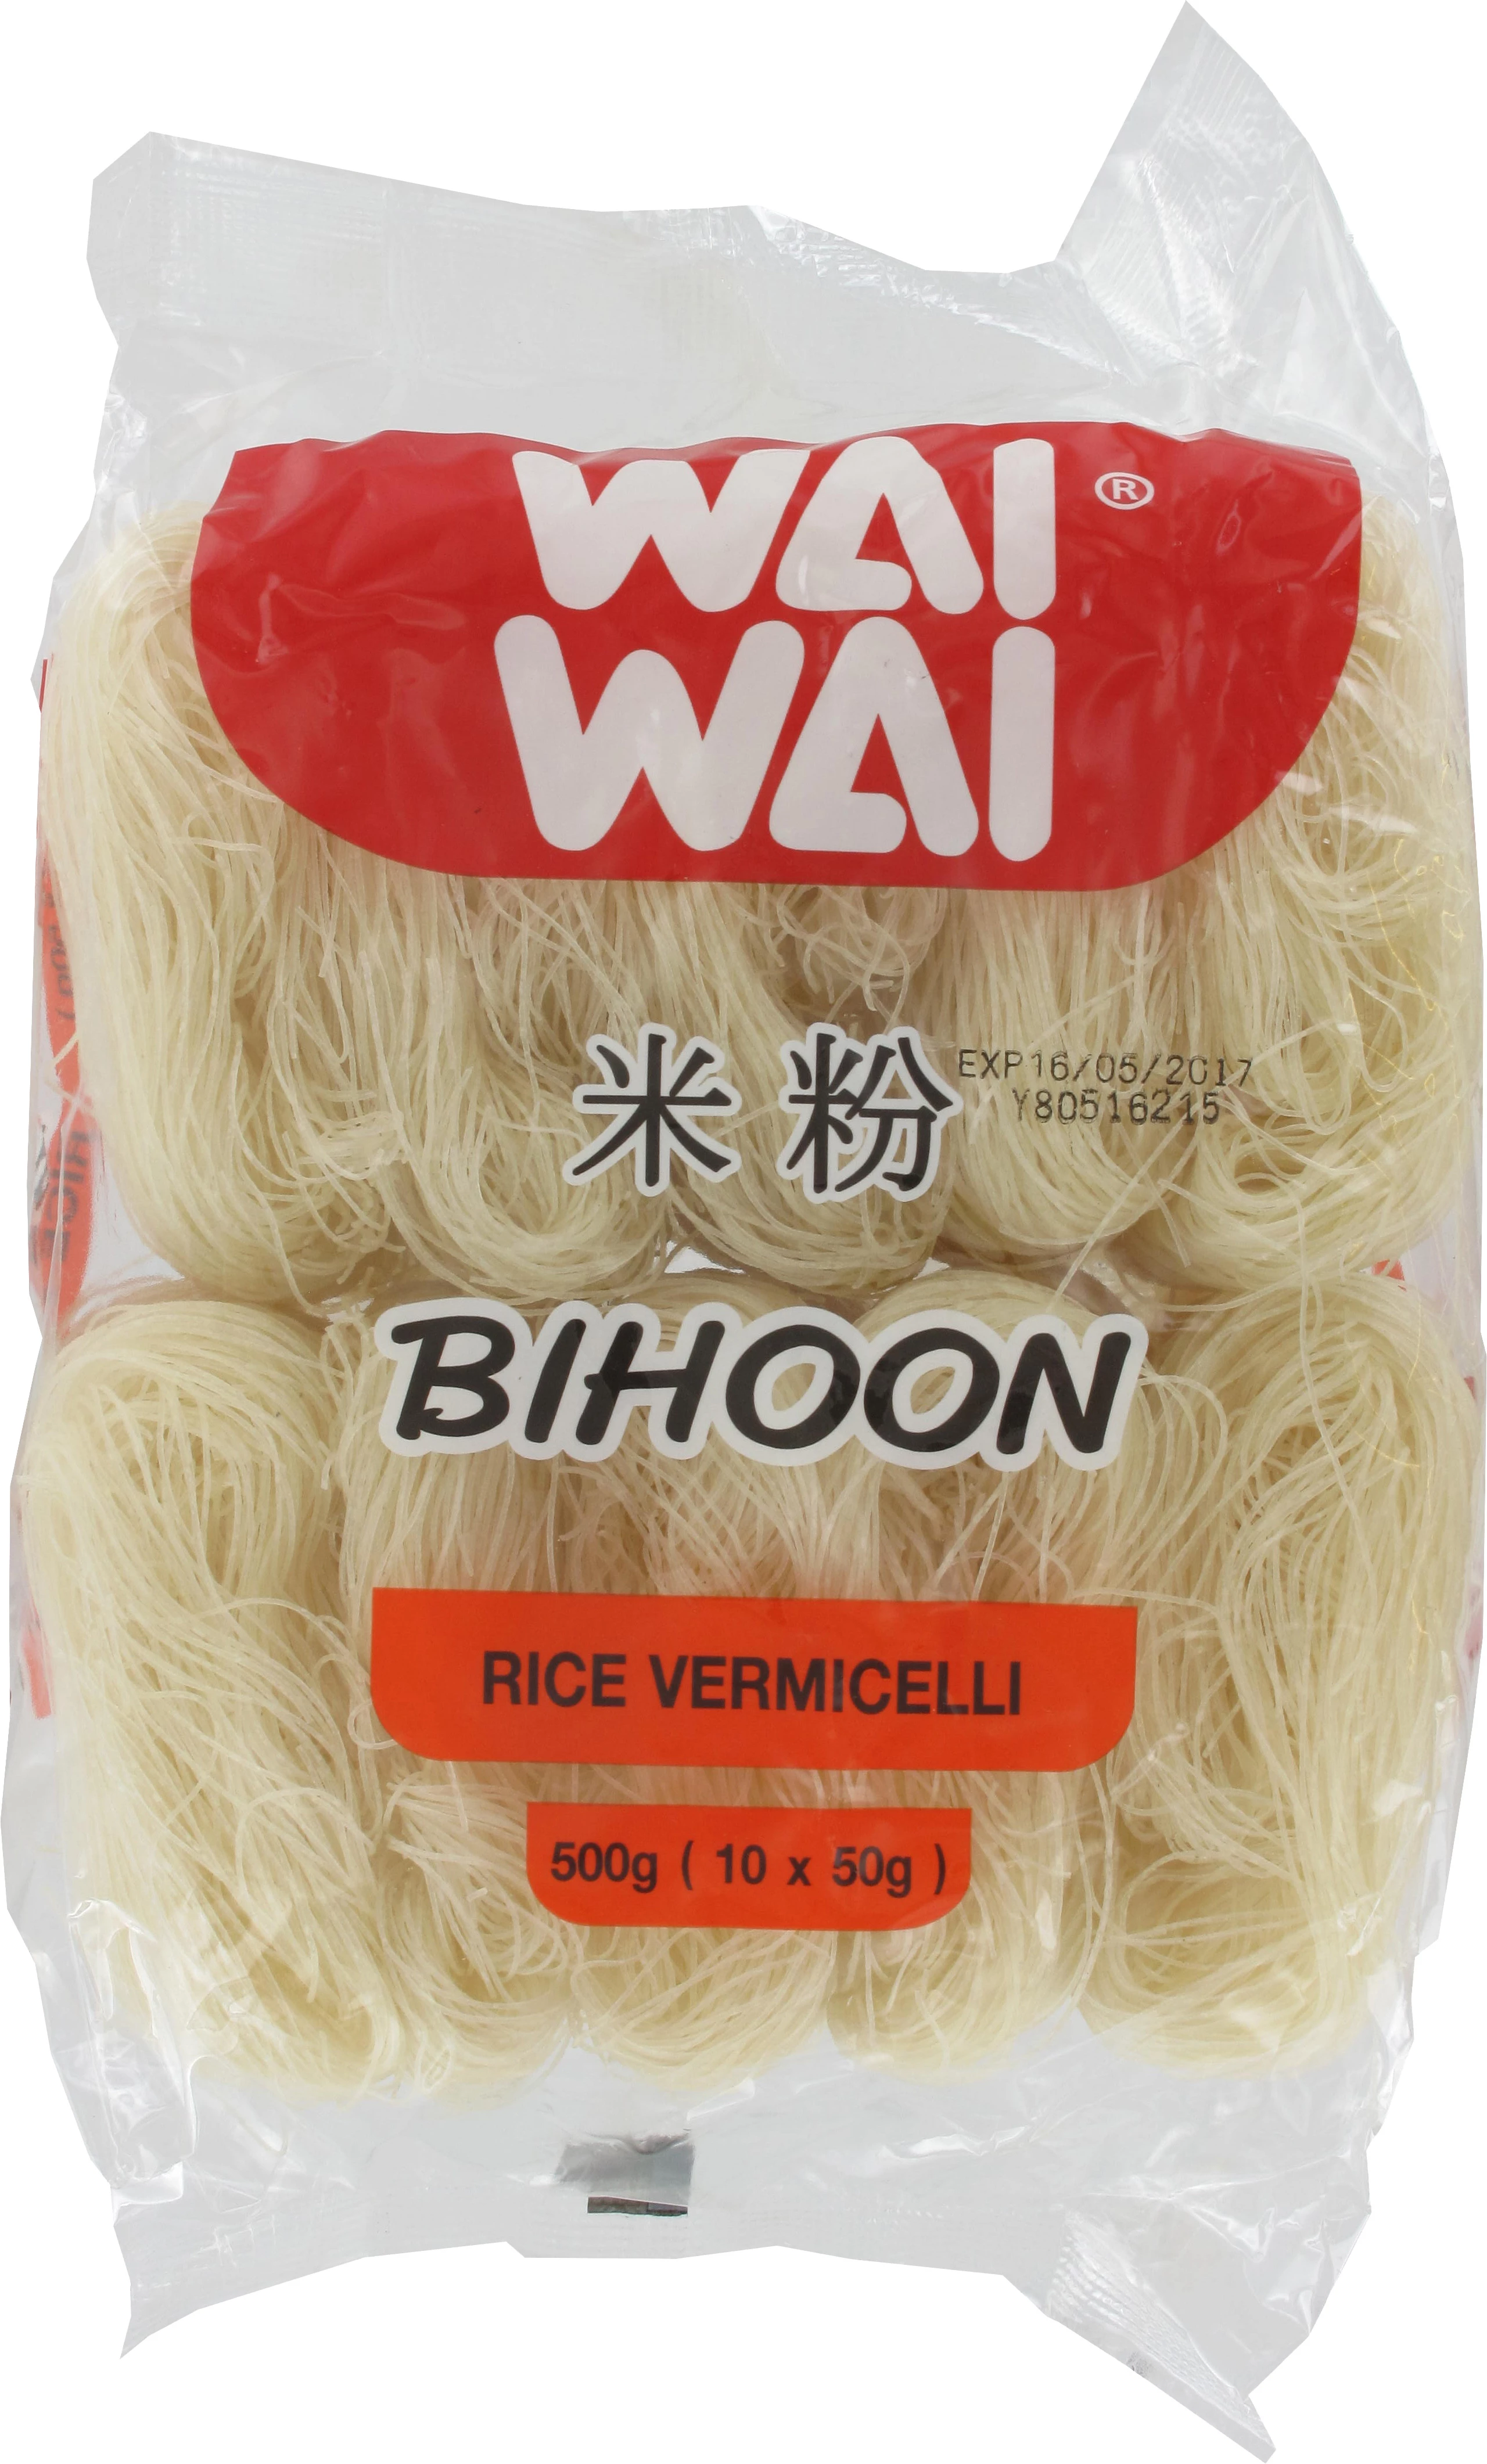 شعيرية الأرز (بيهون) 24 × 500 جرام - Wai Wai Thailand